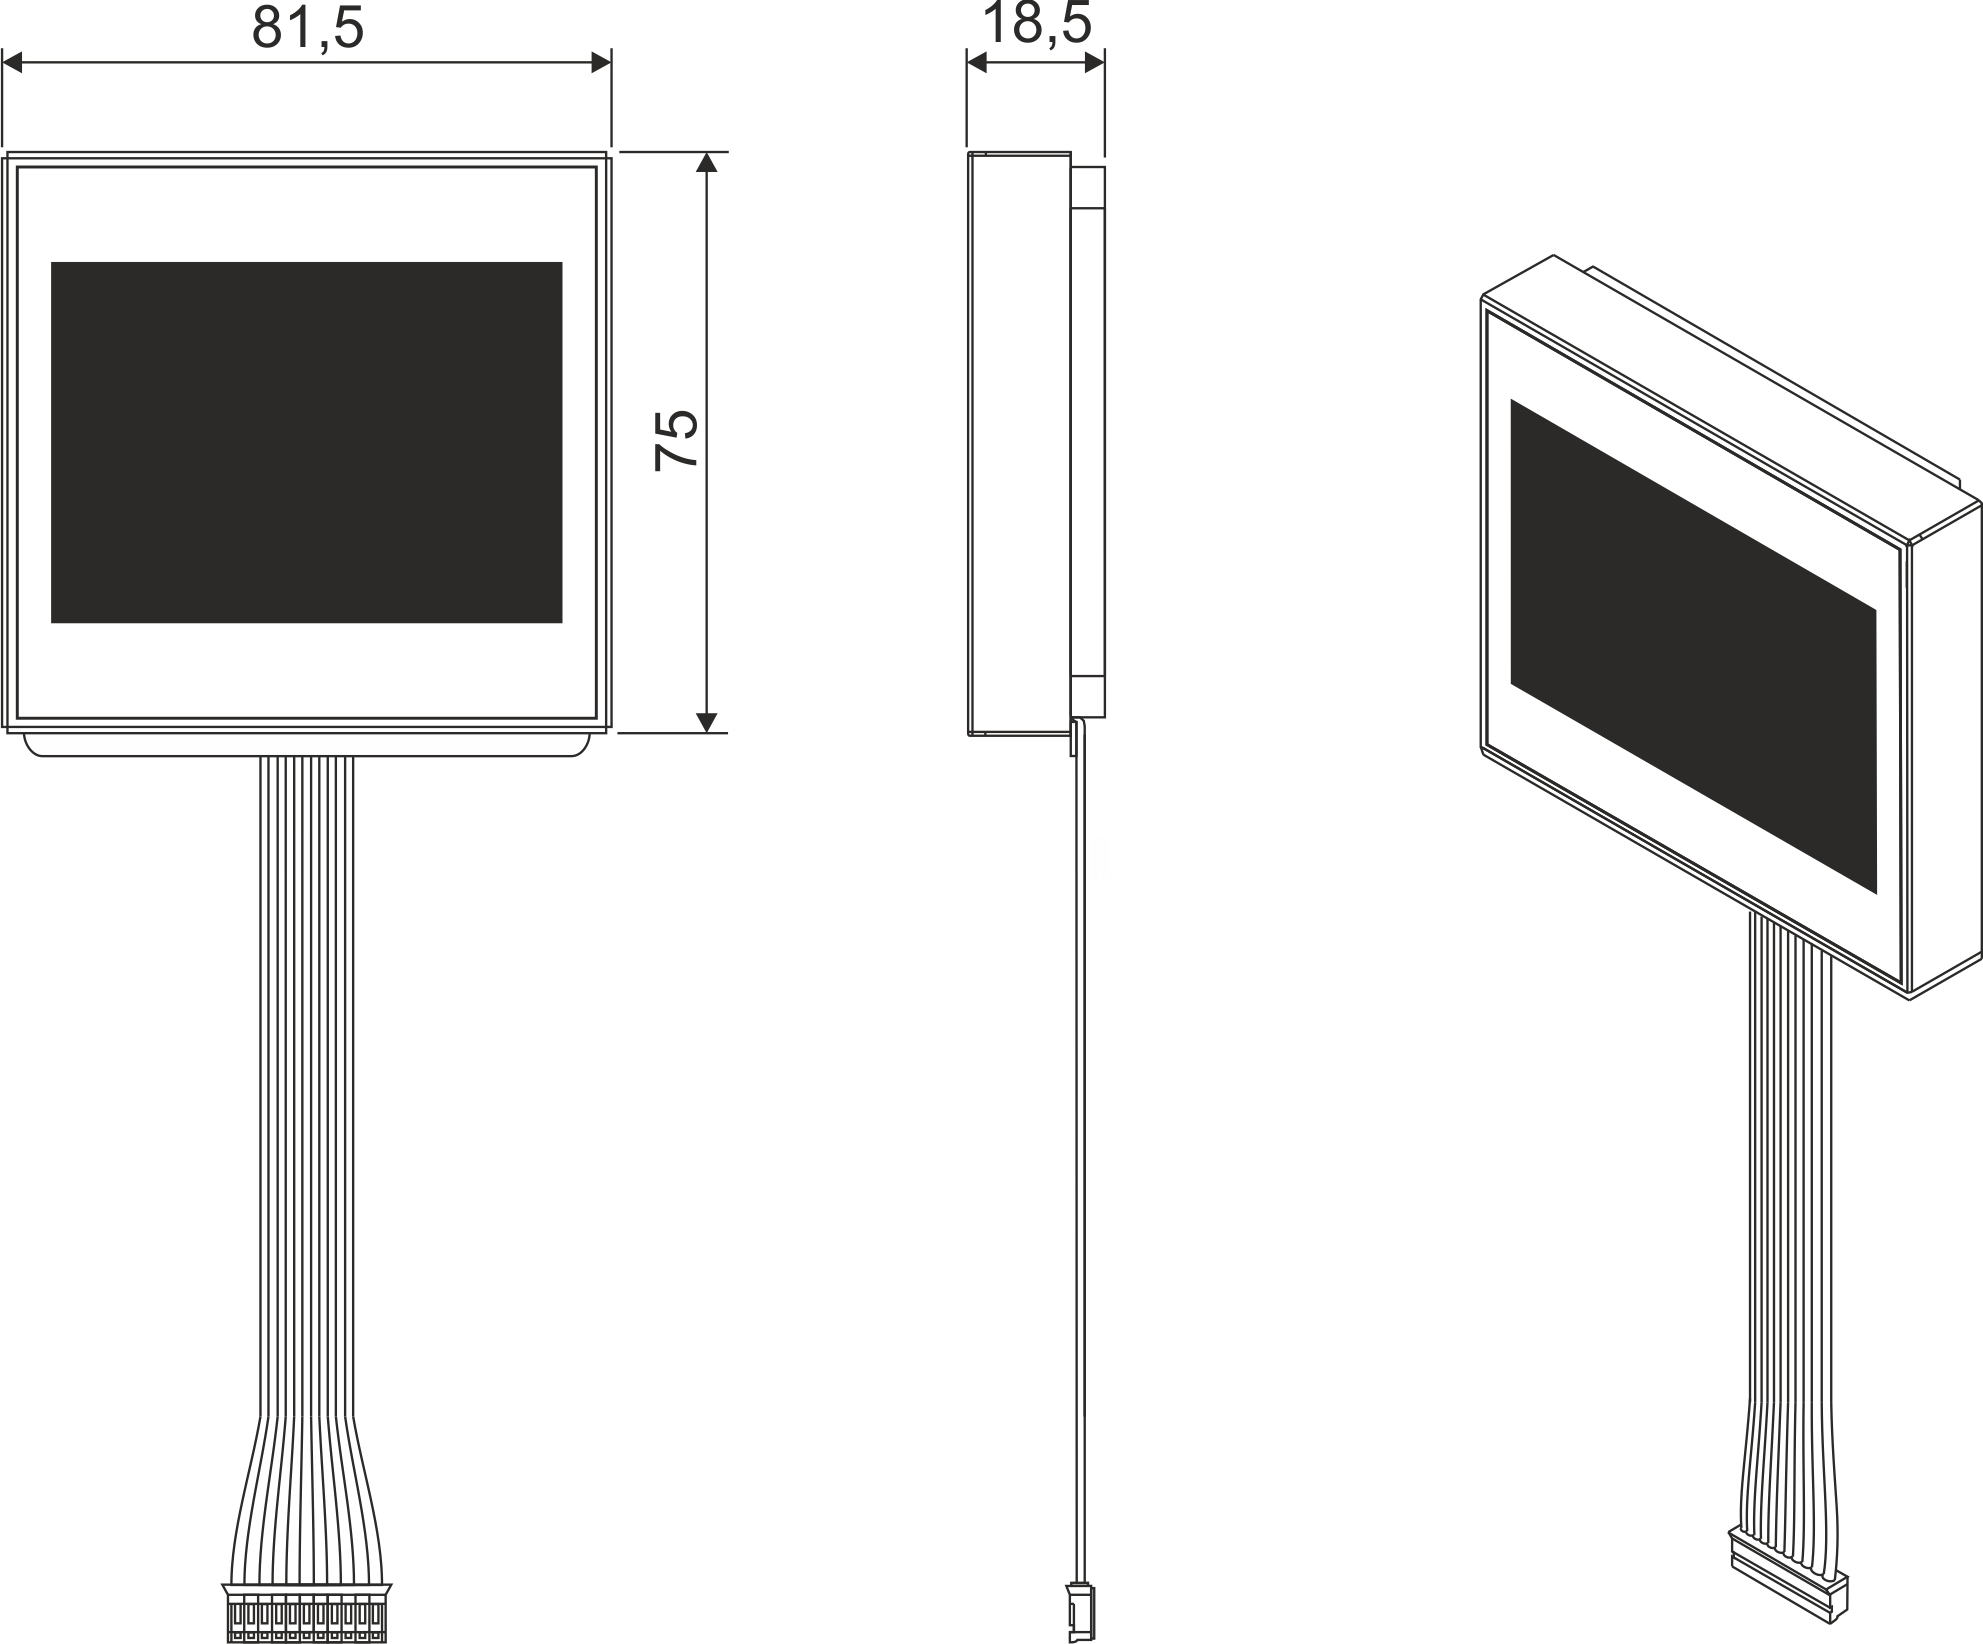 UP800 LCD 3,5” Moduł wyświetlacza LCD 3,5” - Wymiary